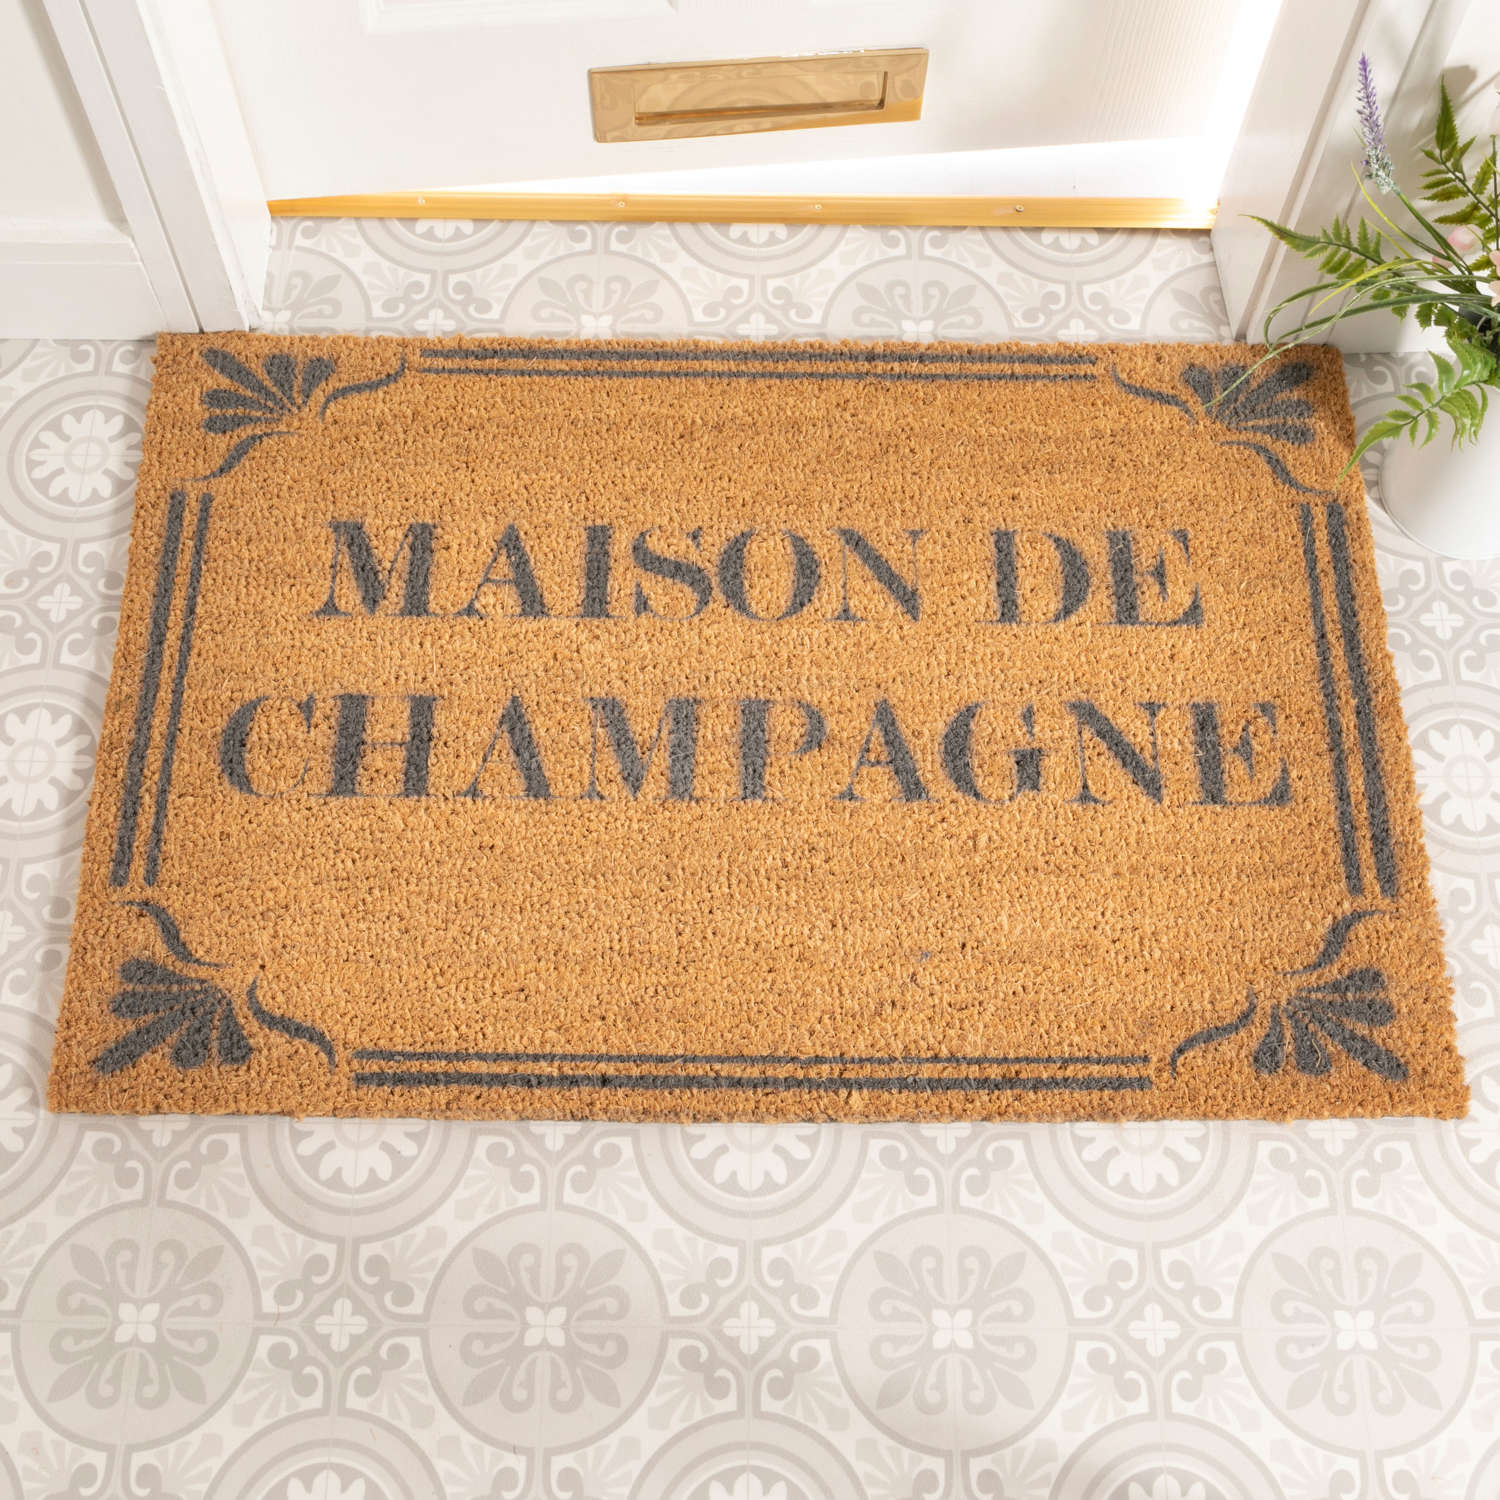 Grey Maison de Champagne design rural house larger size doormat